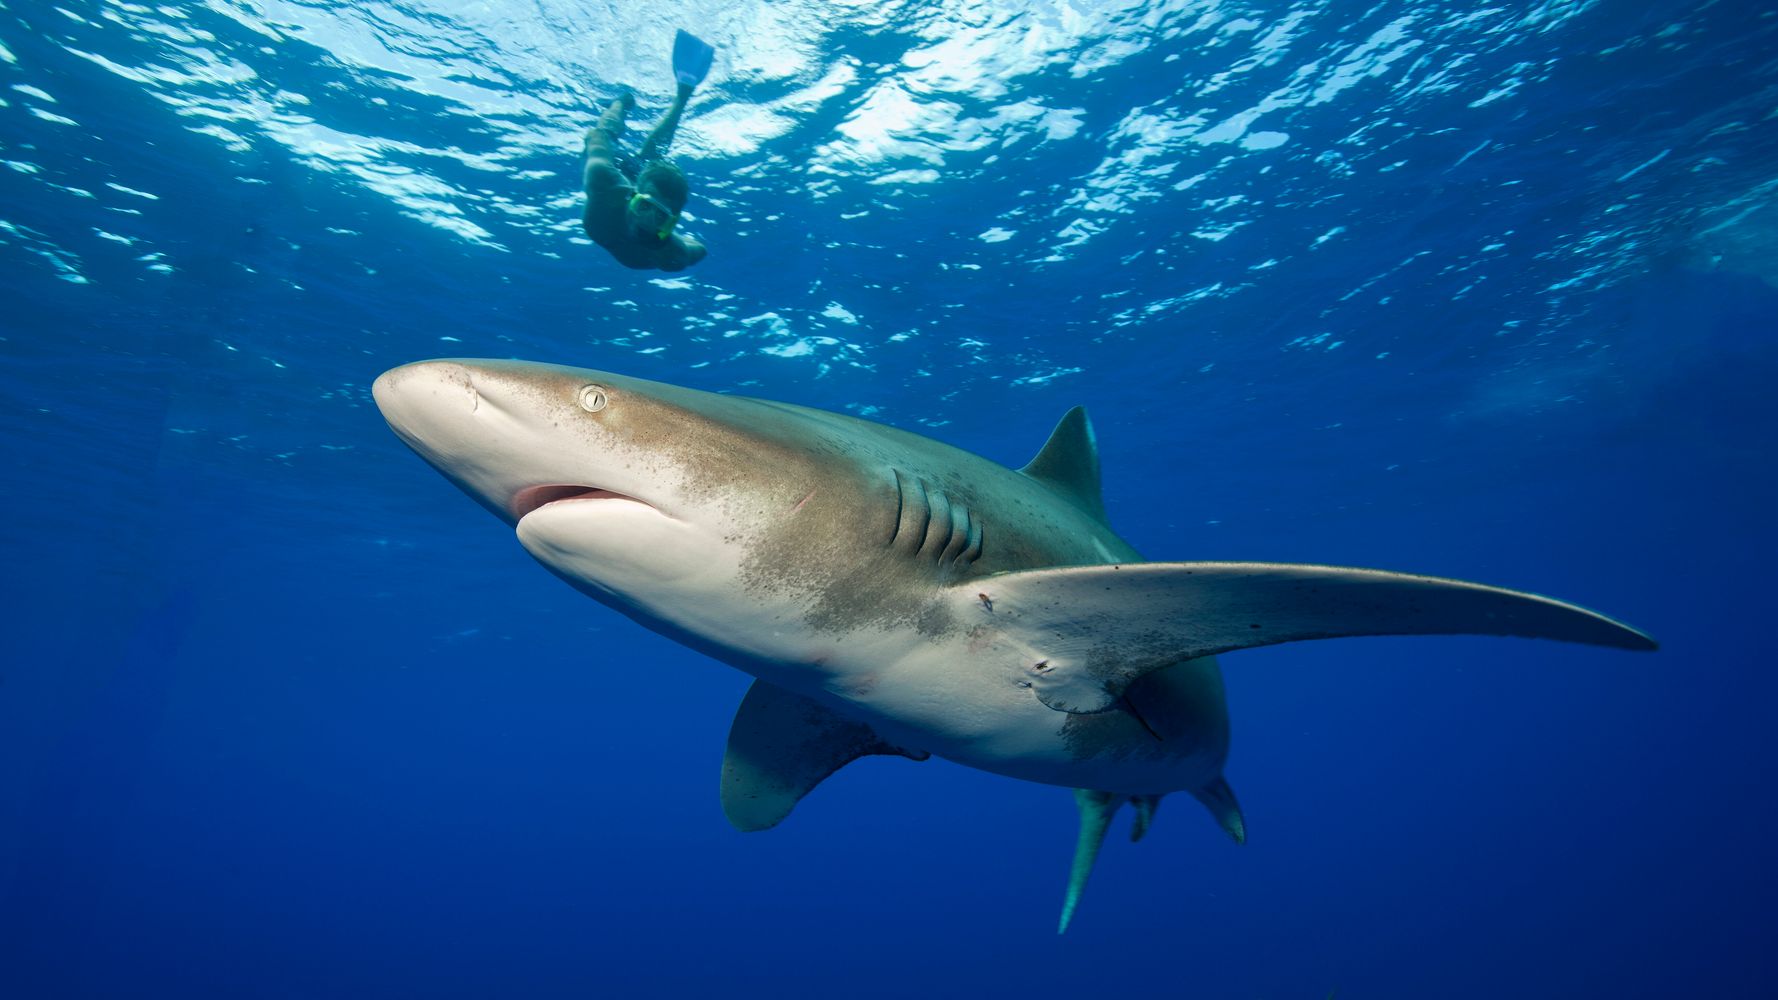 サメやエイの数は 過去50年で71 も激減 絶滅から守るために もう時間がありません ハフポスト